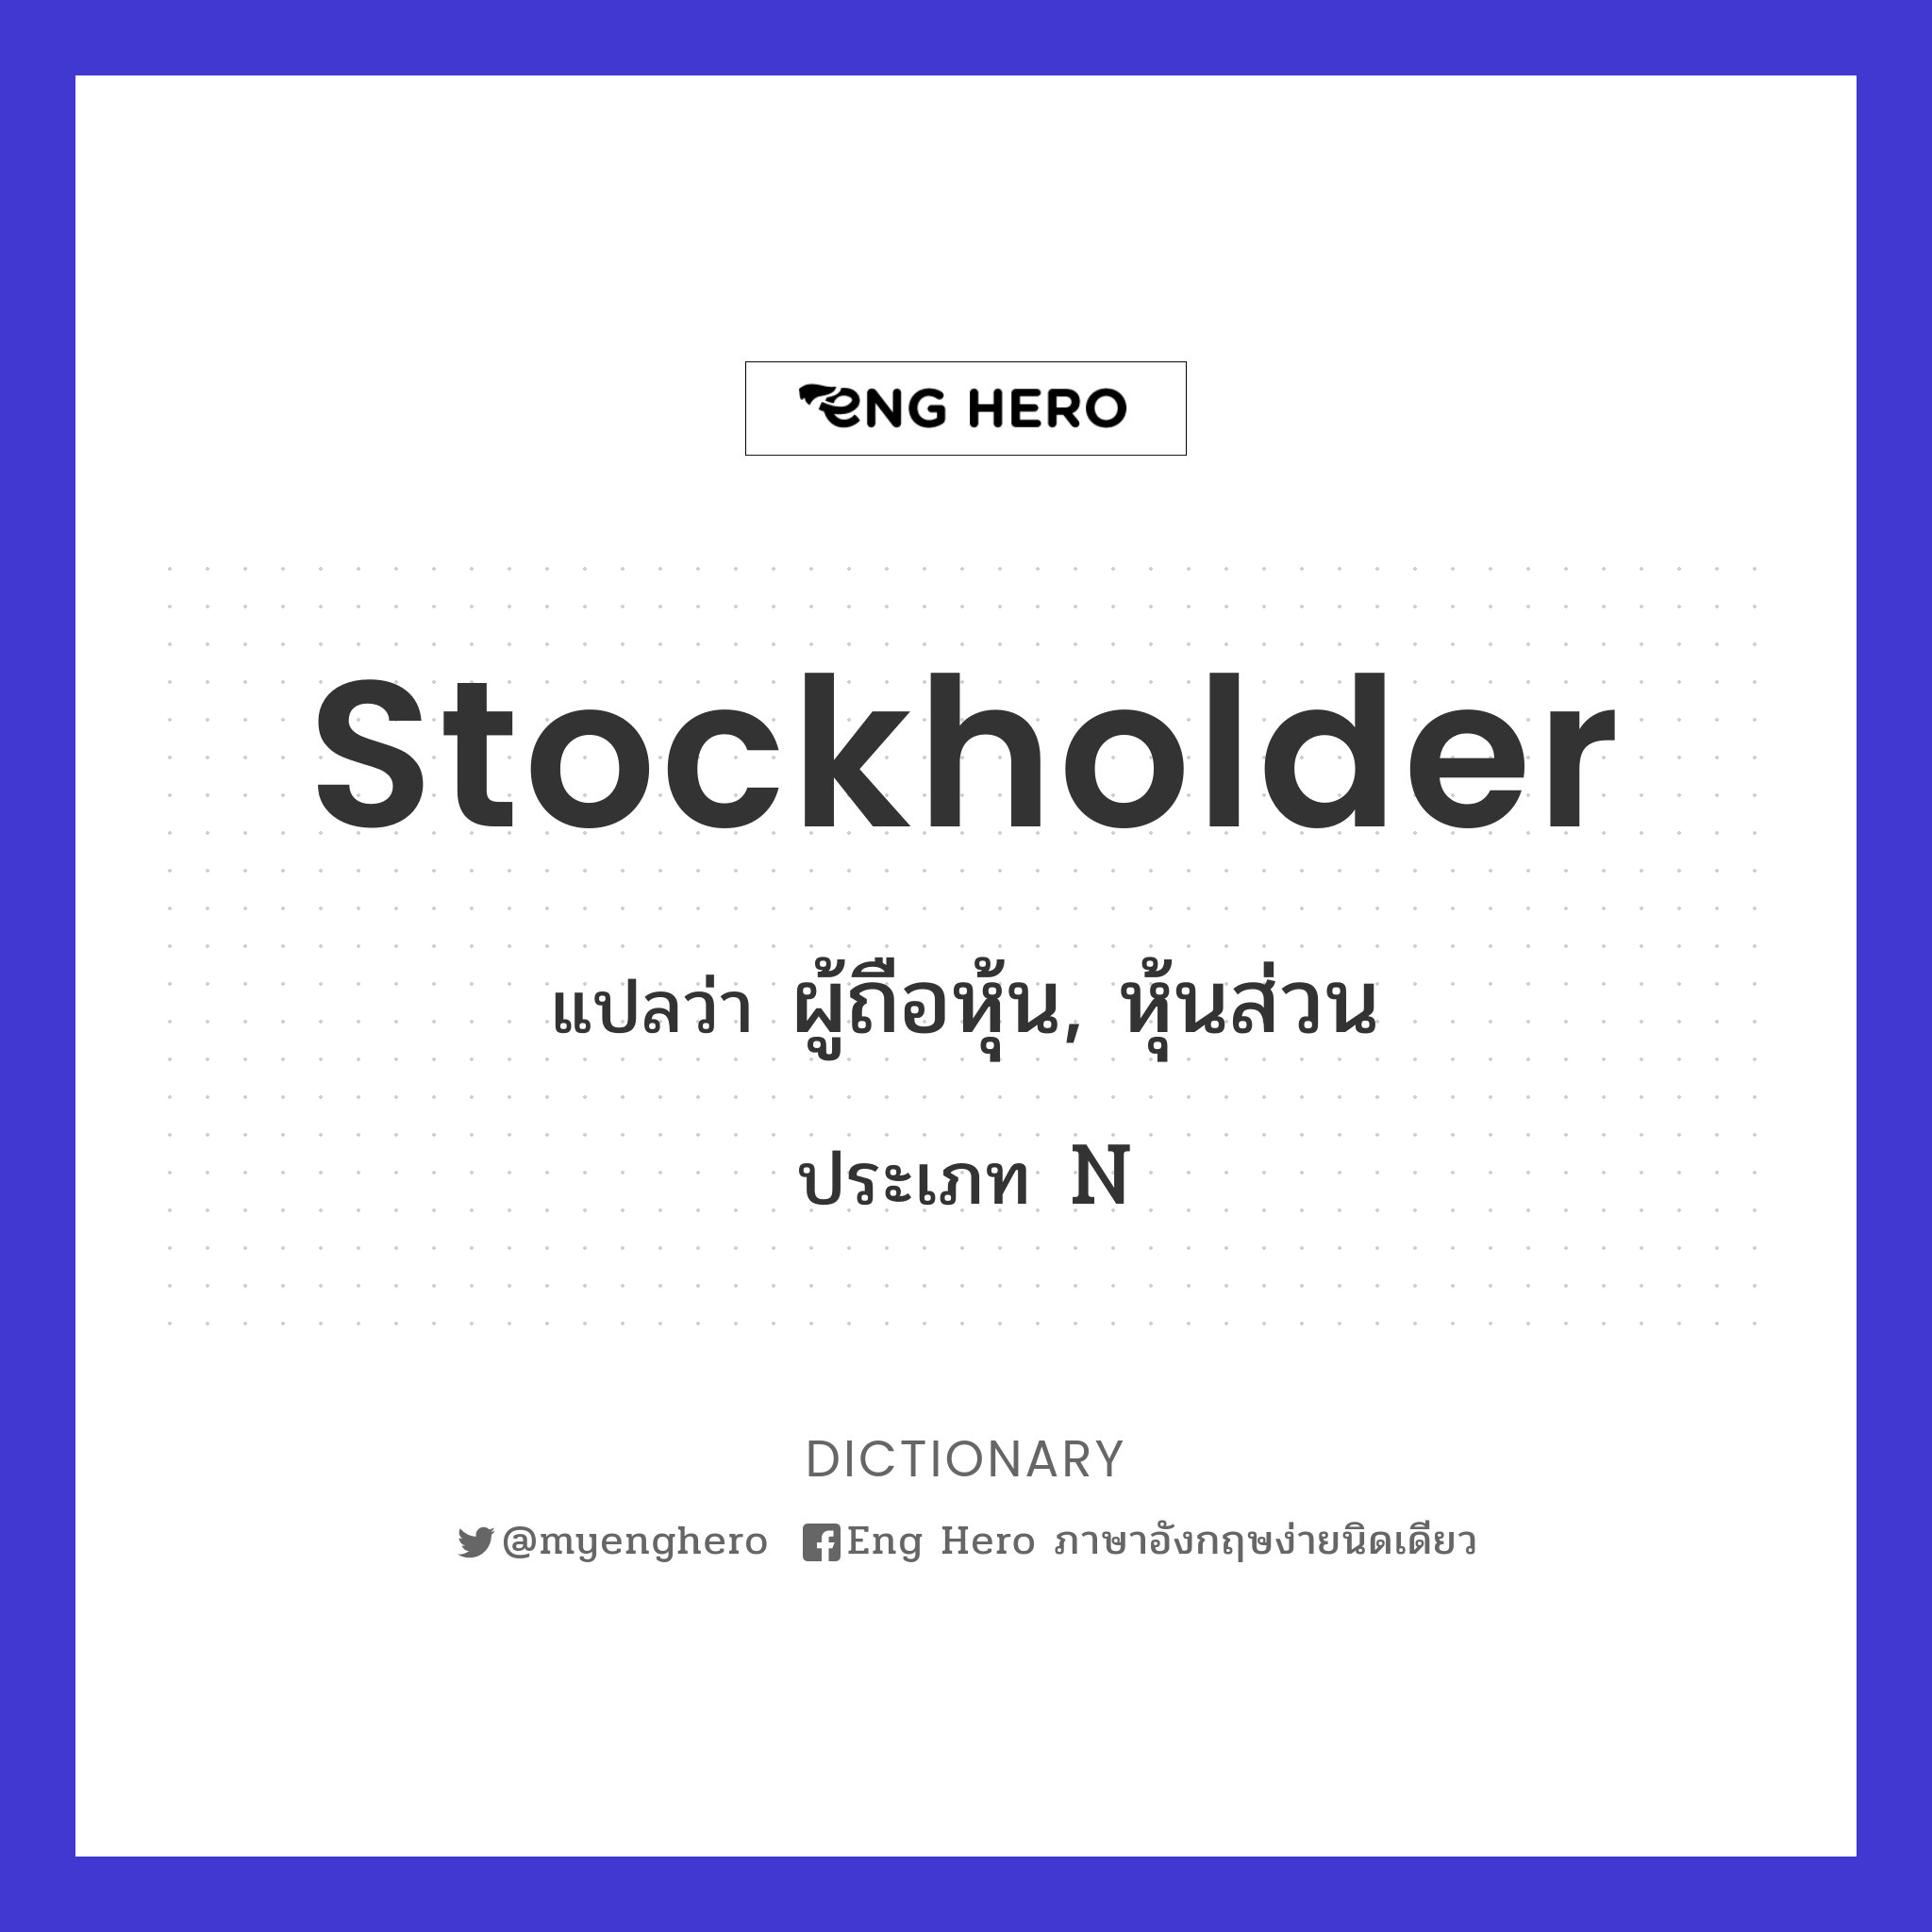 stockholder